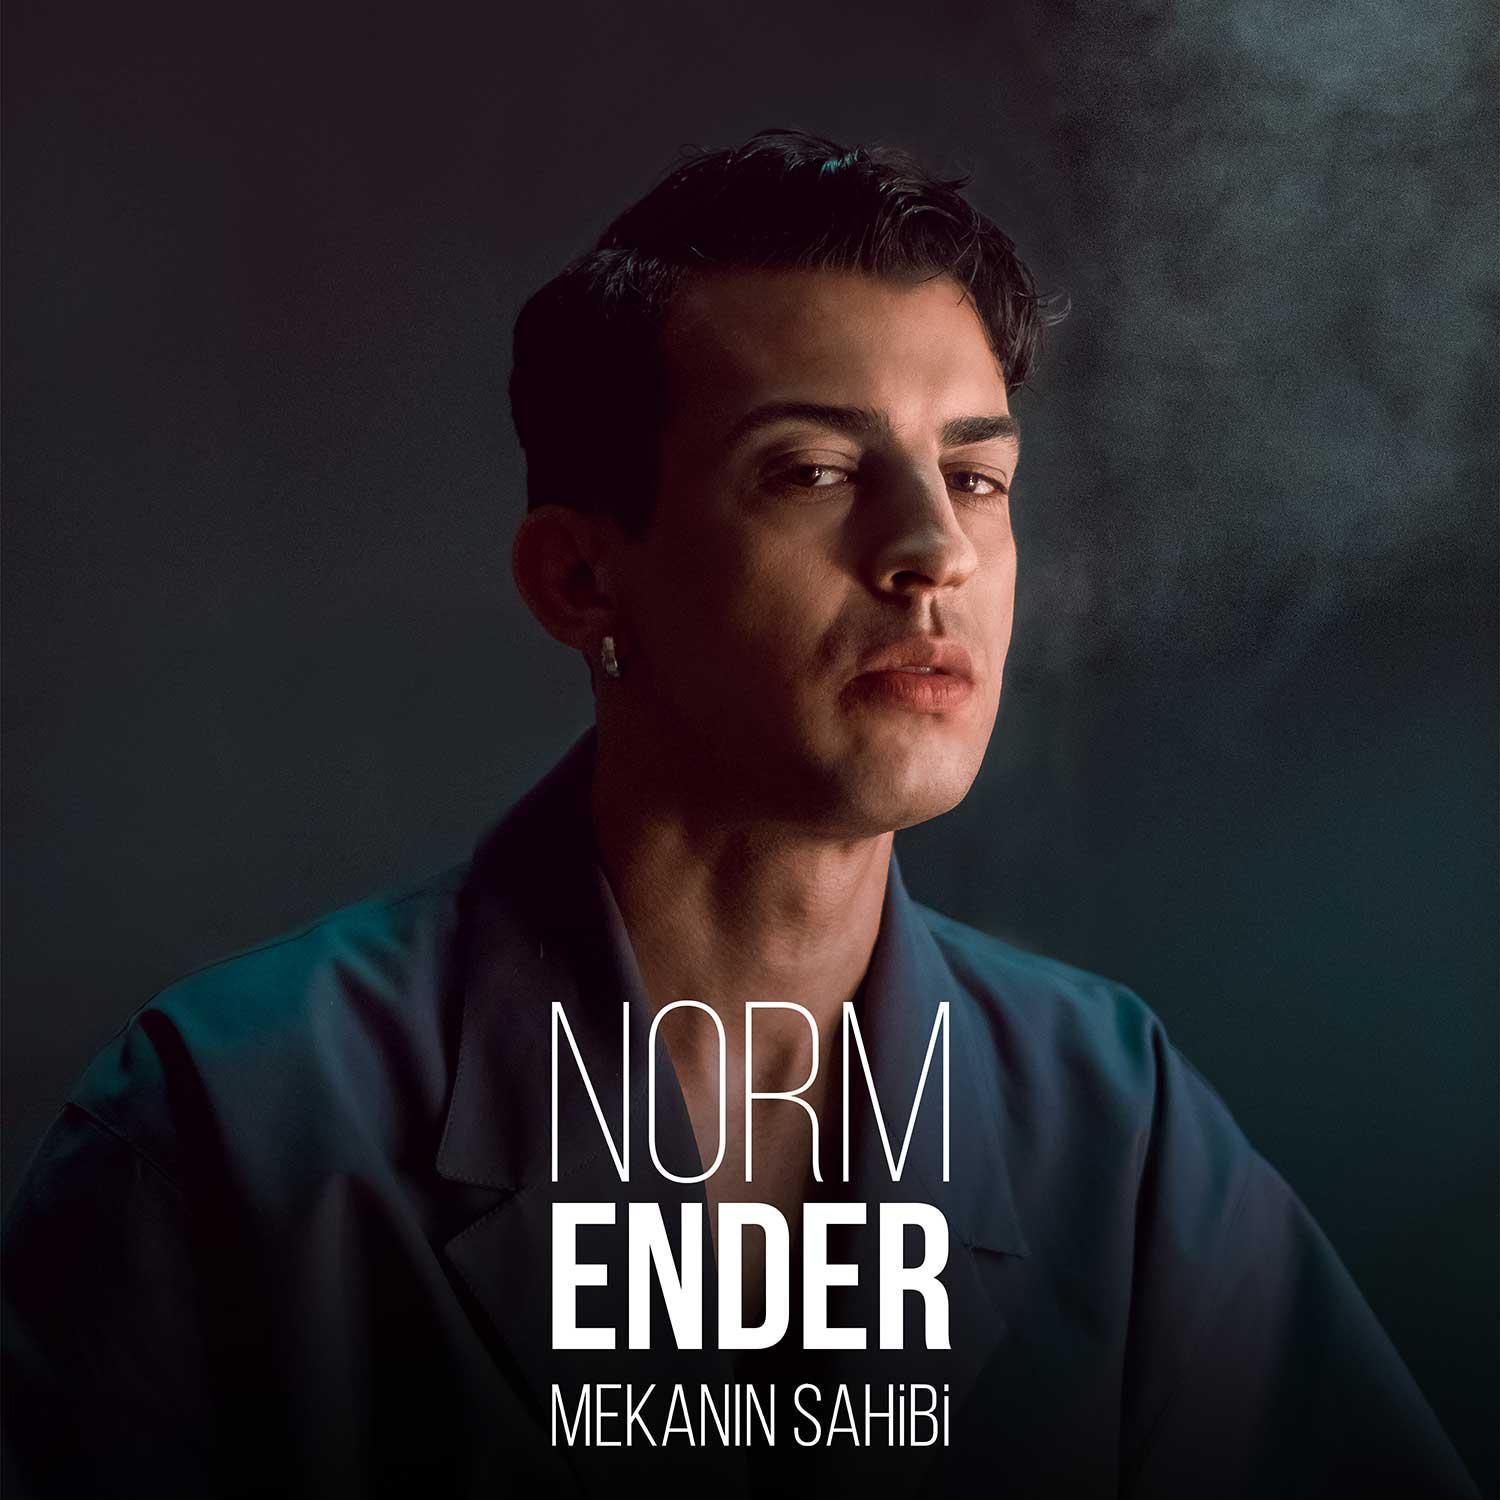 Norm Ender: Birinin Amerikan özentisi rap’e, ‘Dur’ demesi gerekiyordu